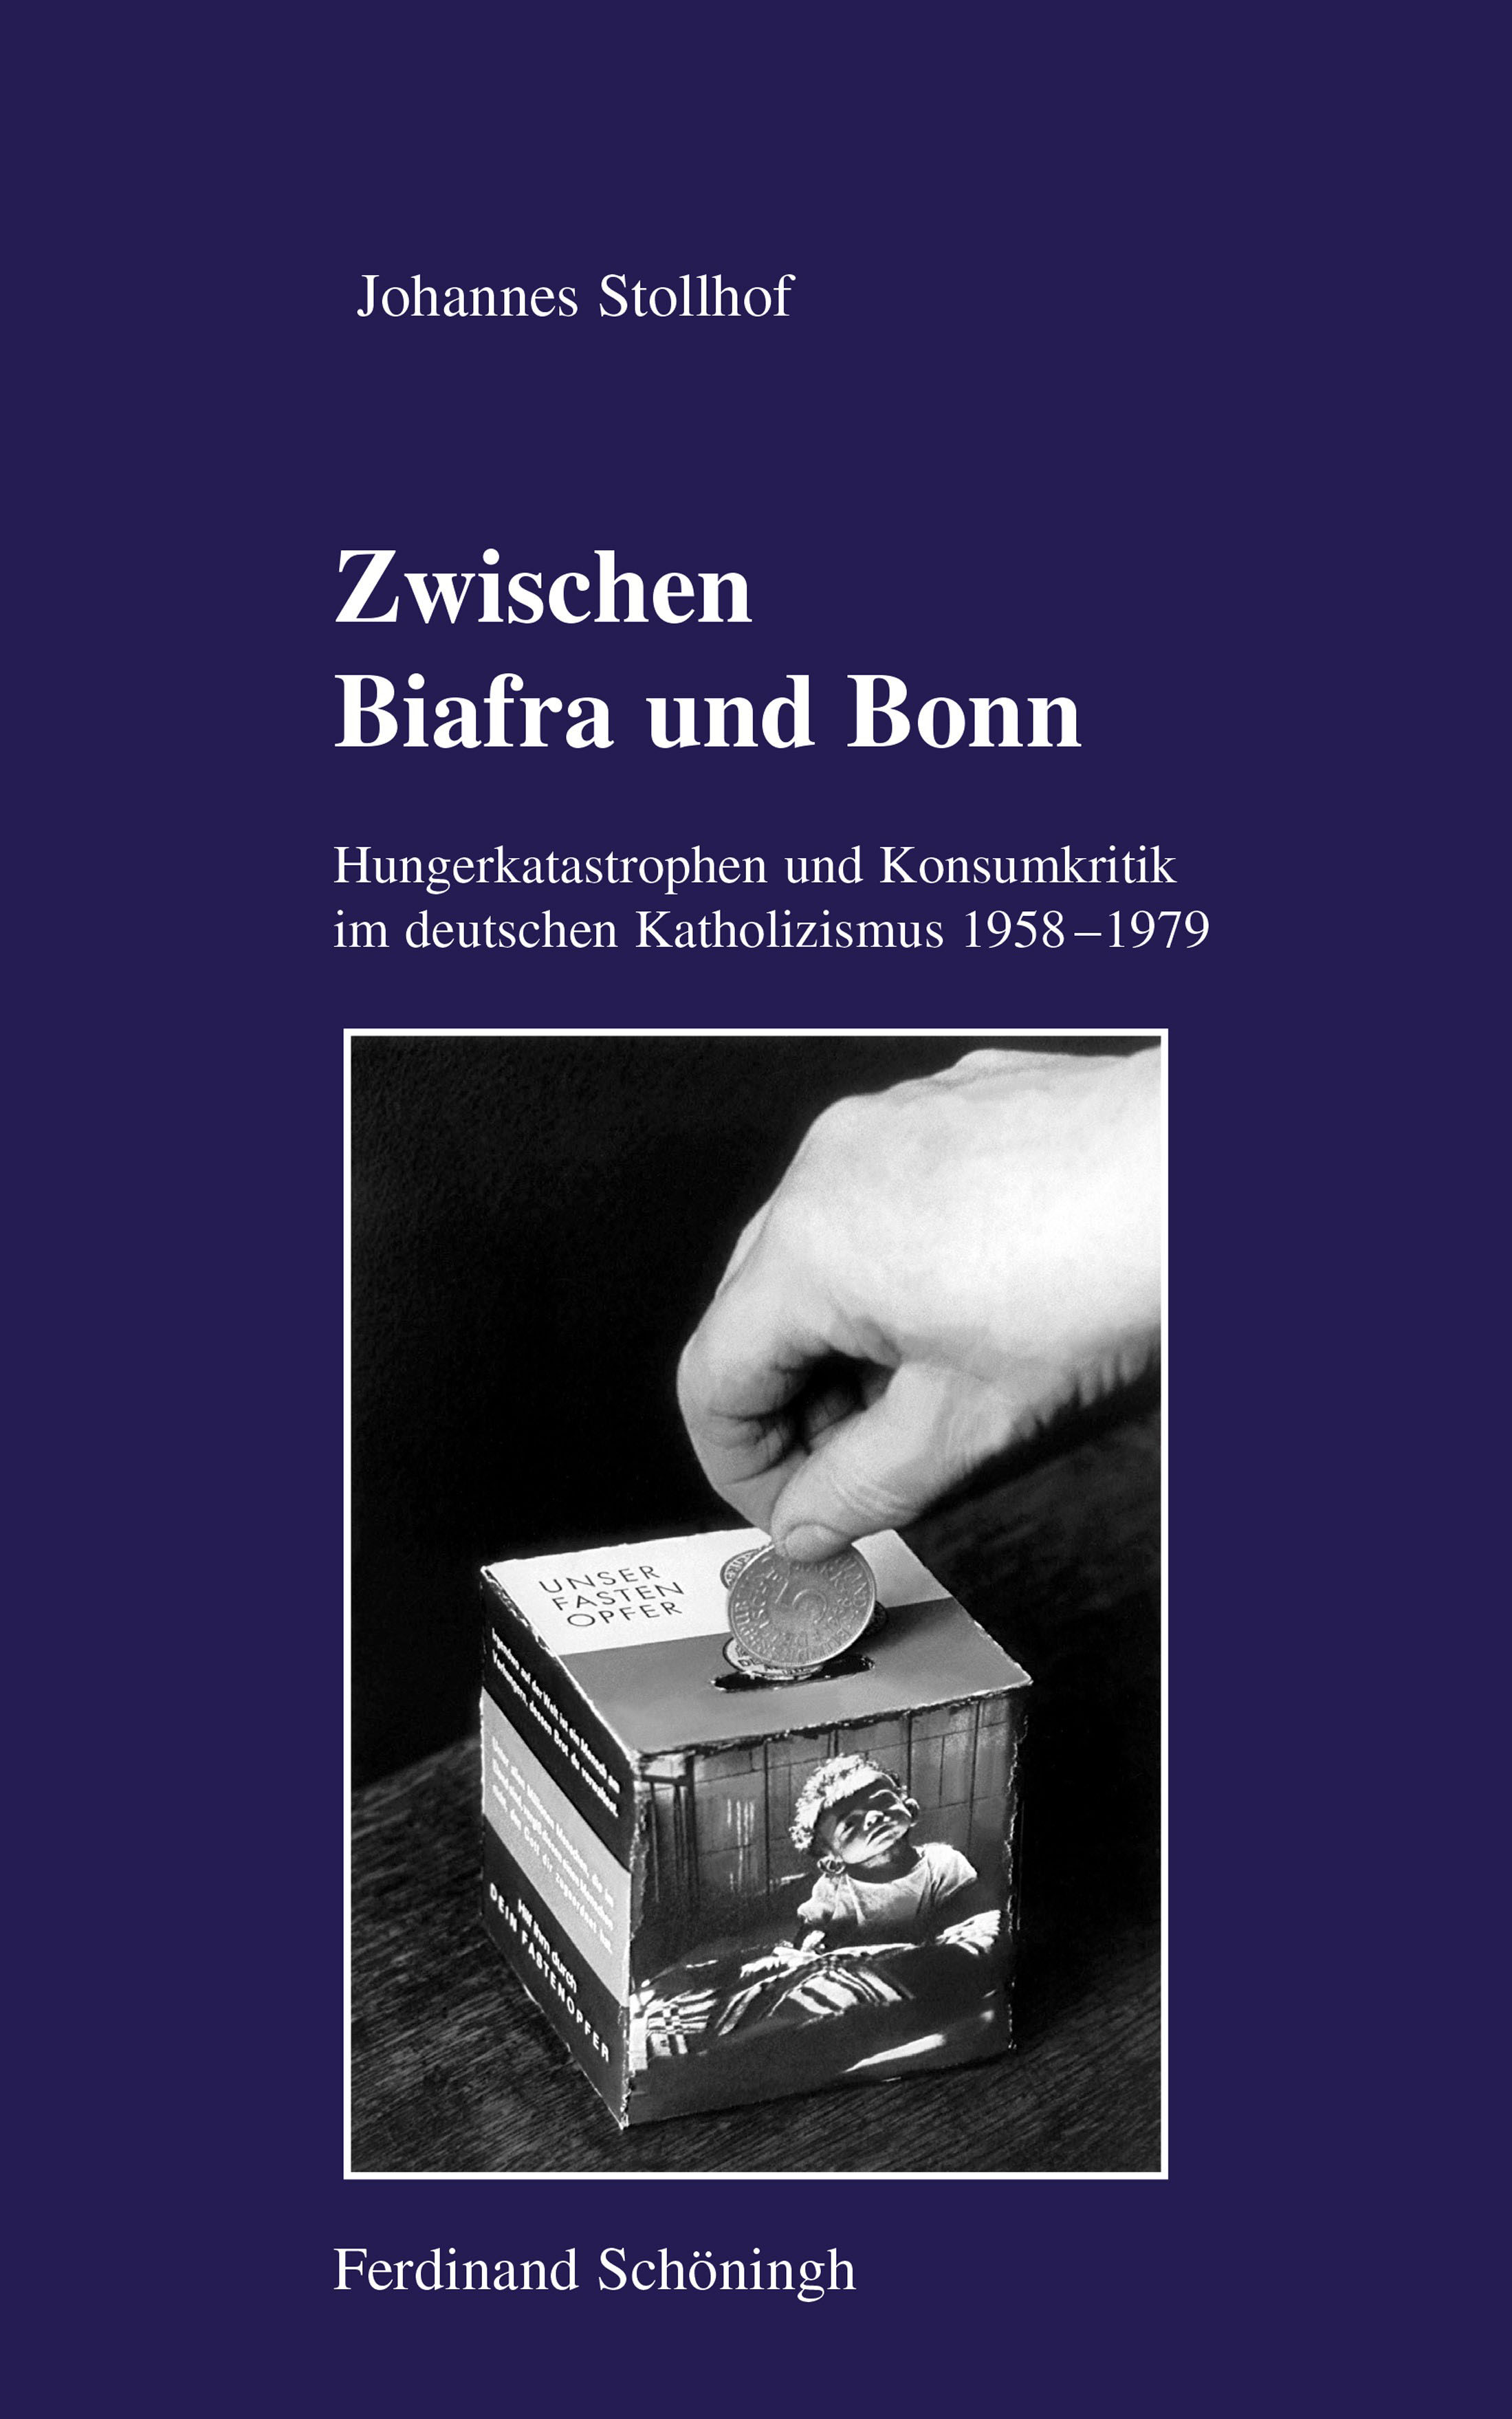 Johannes Stollhof: Zwischen Biafra und Bonn. Hungerkatastrophen und Konsumkritik im deutschen Katholizismus 1958–1979.